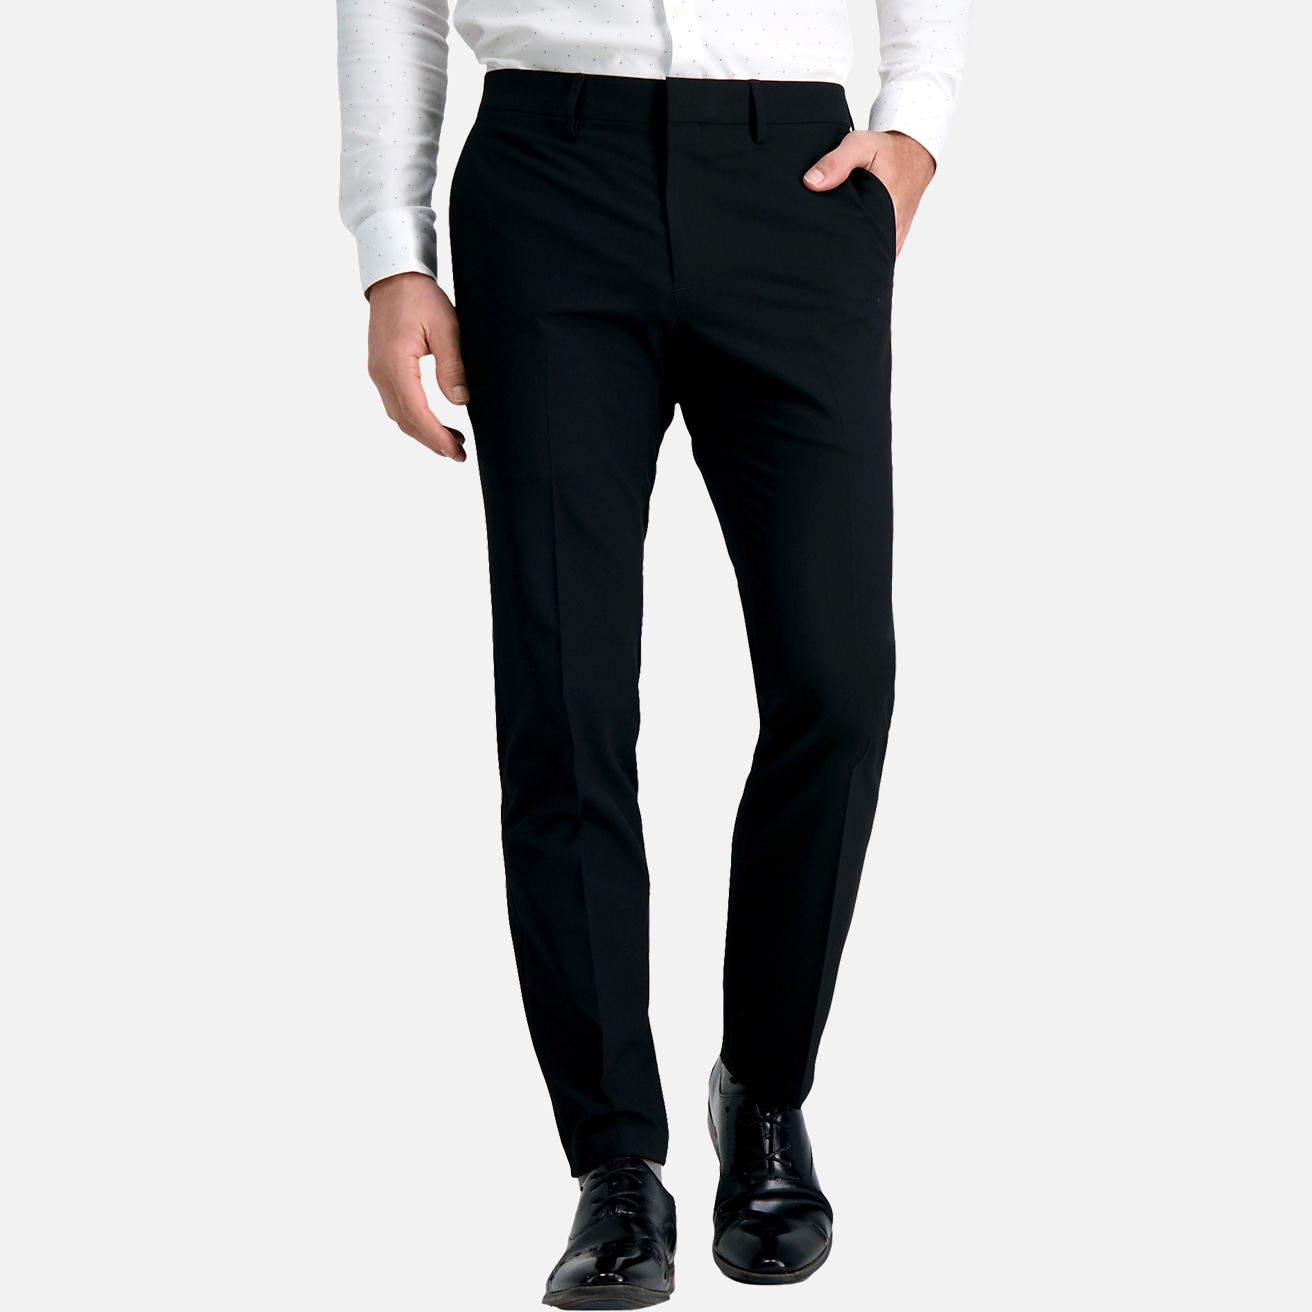 Buy J.M. Haggar Men's Premium Stretch Tailored Fit Suit Separates